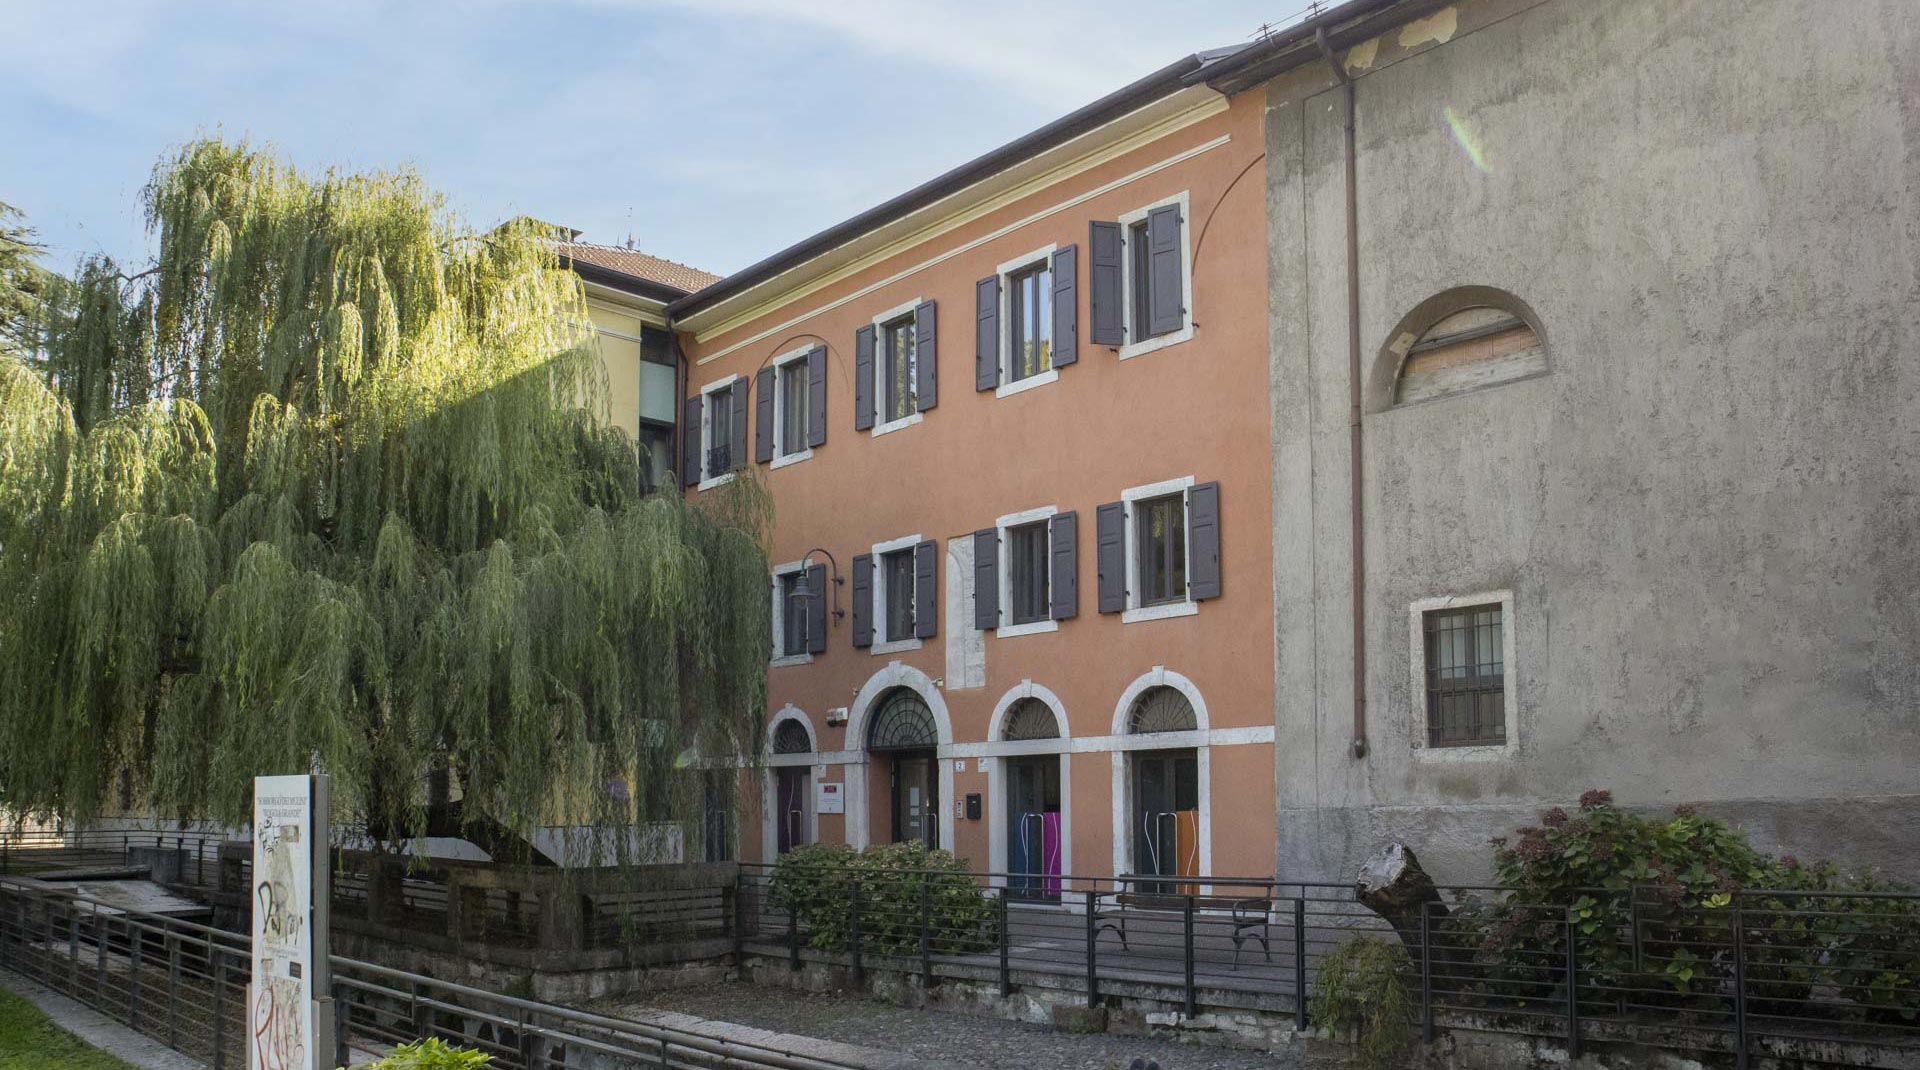 Centromoda Canossa | Scuola professionale a Trento